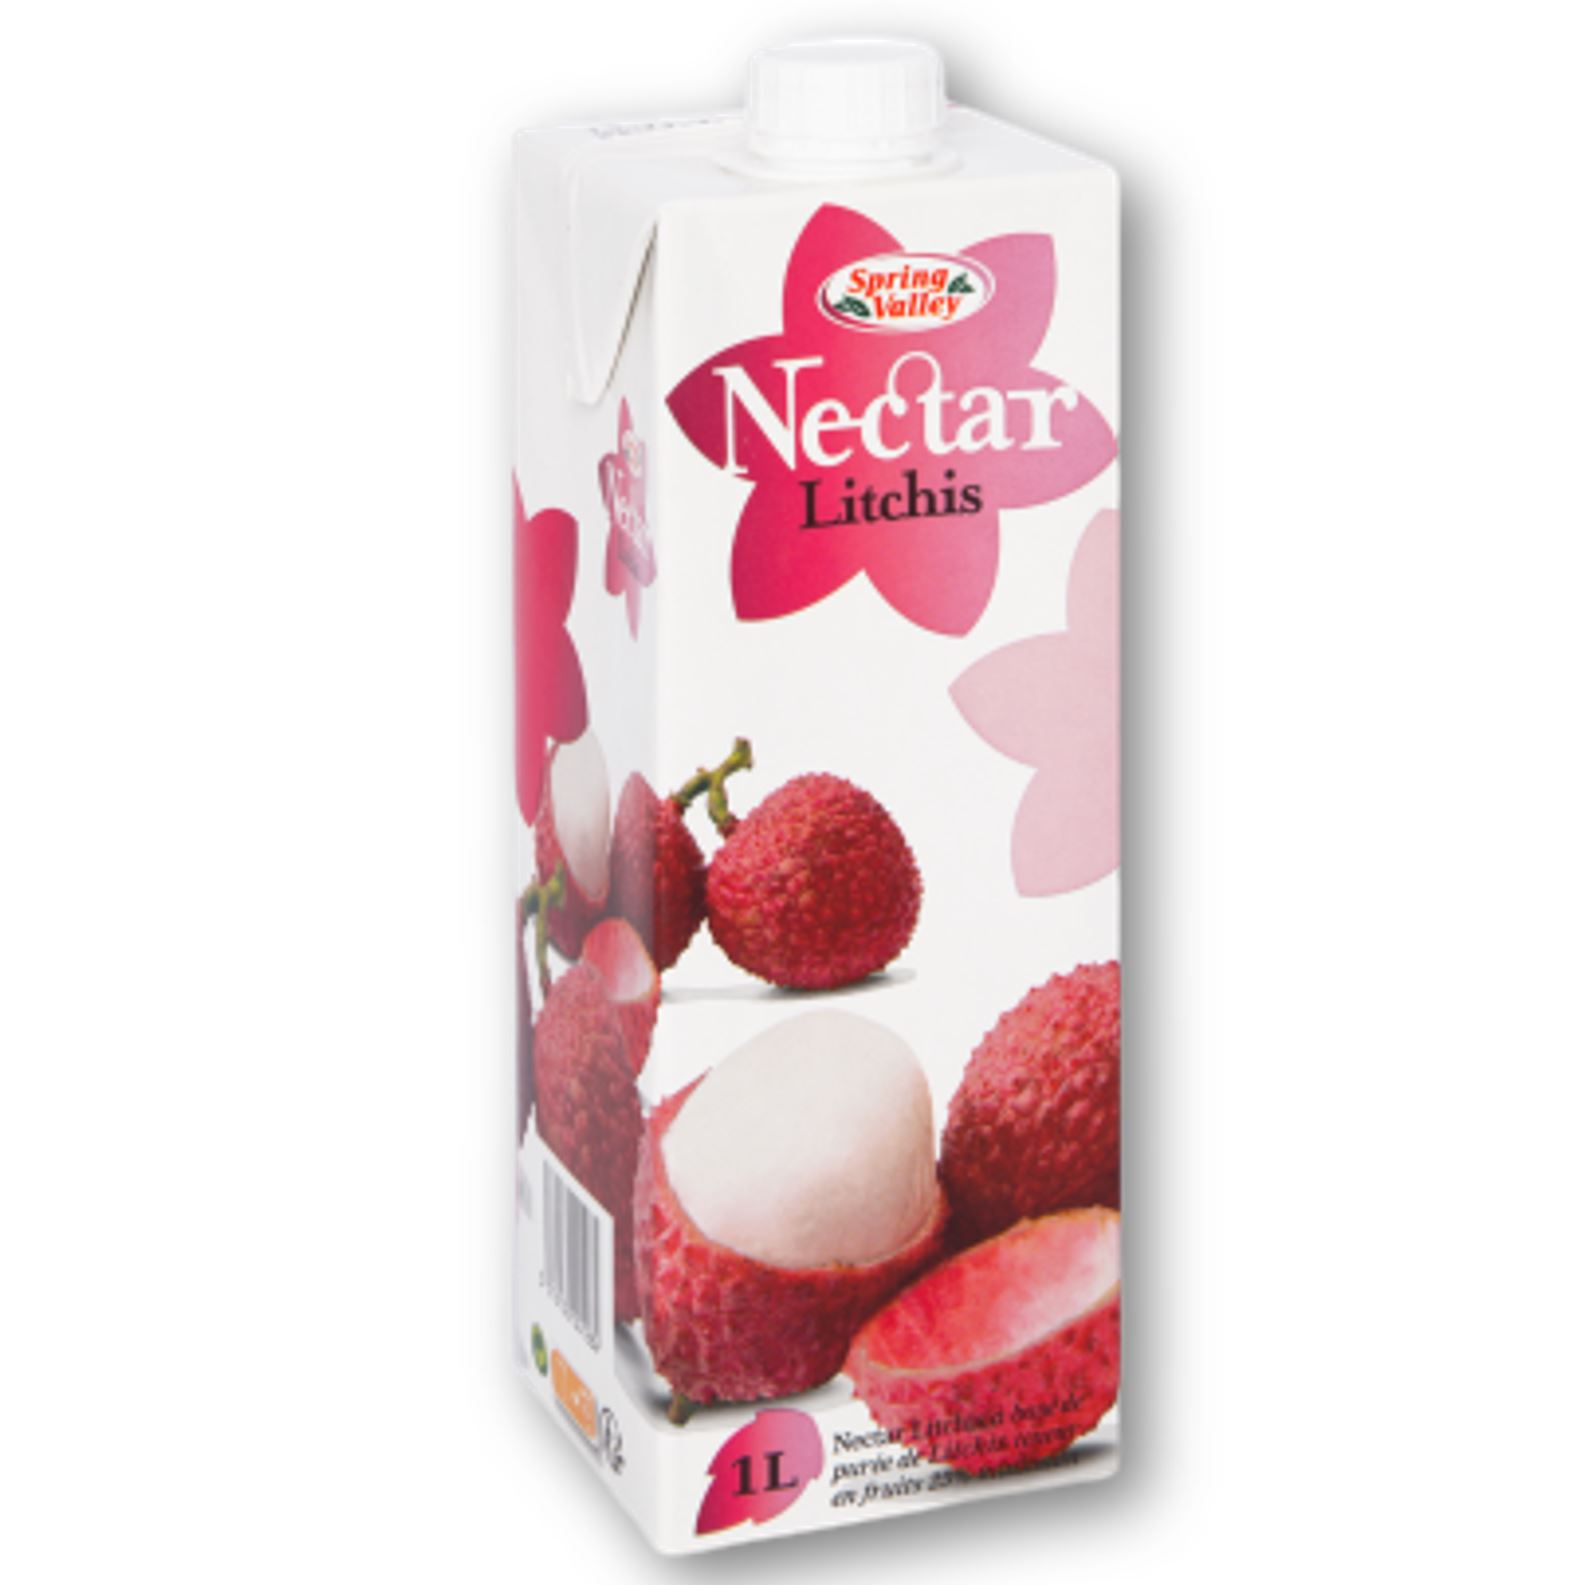 Nectar litchees